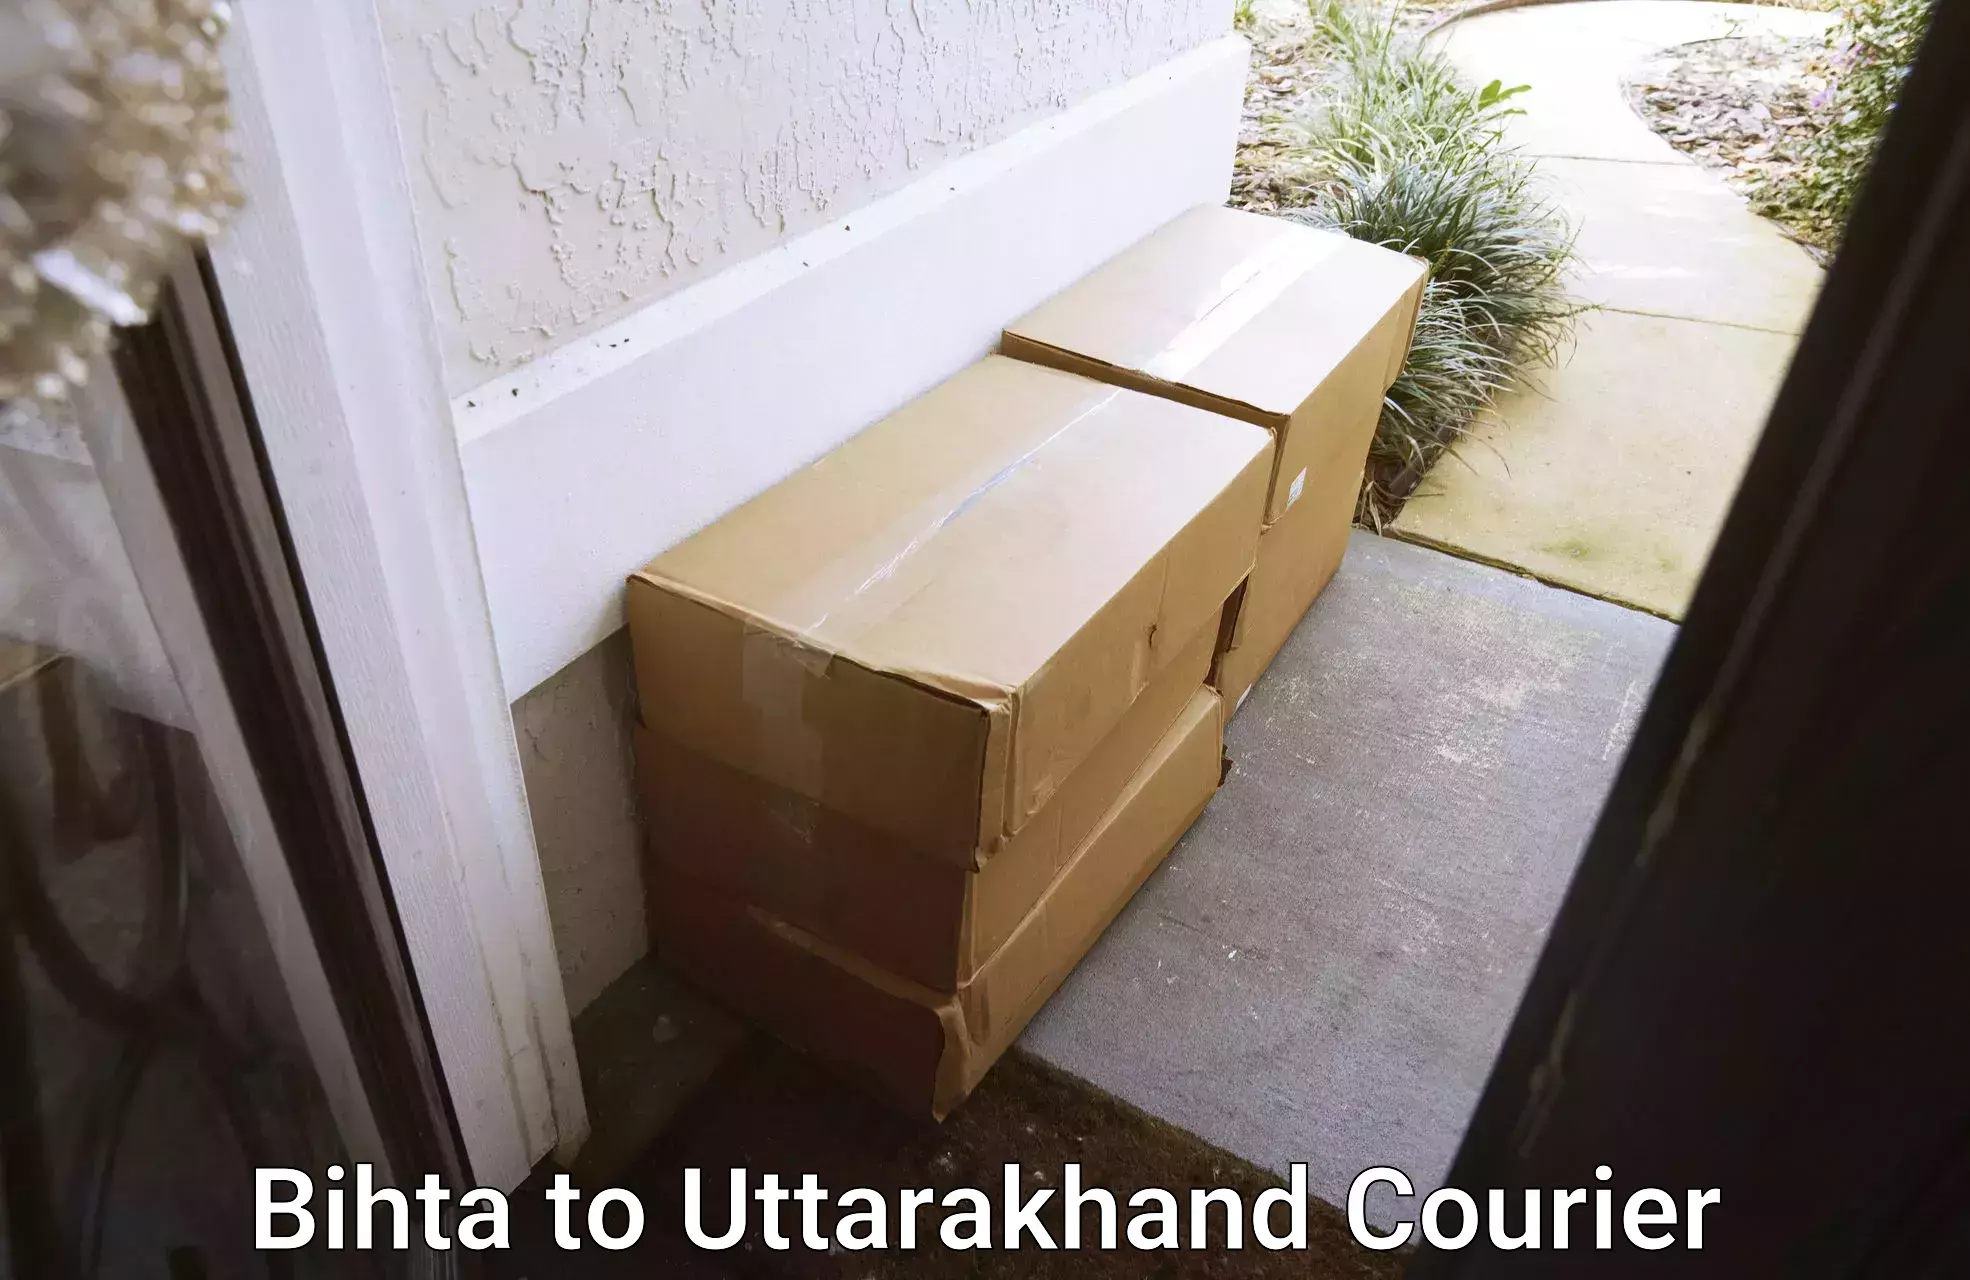 Household goods transport Bihta to Uttarakhand